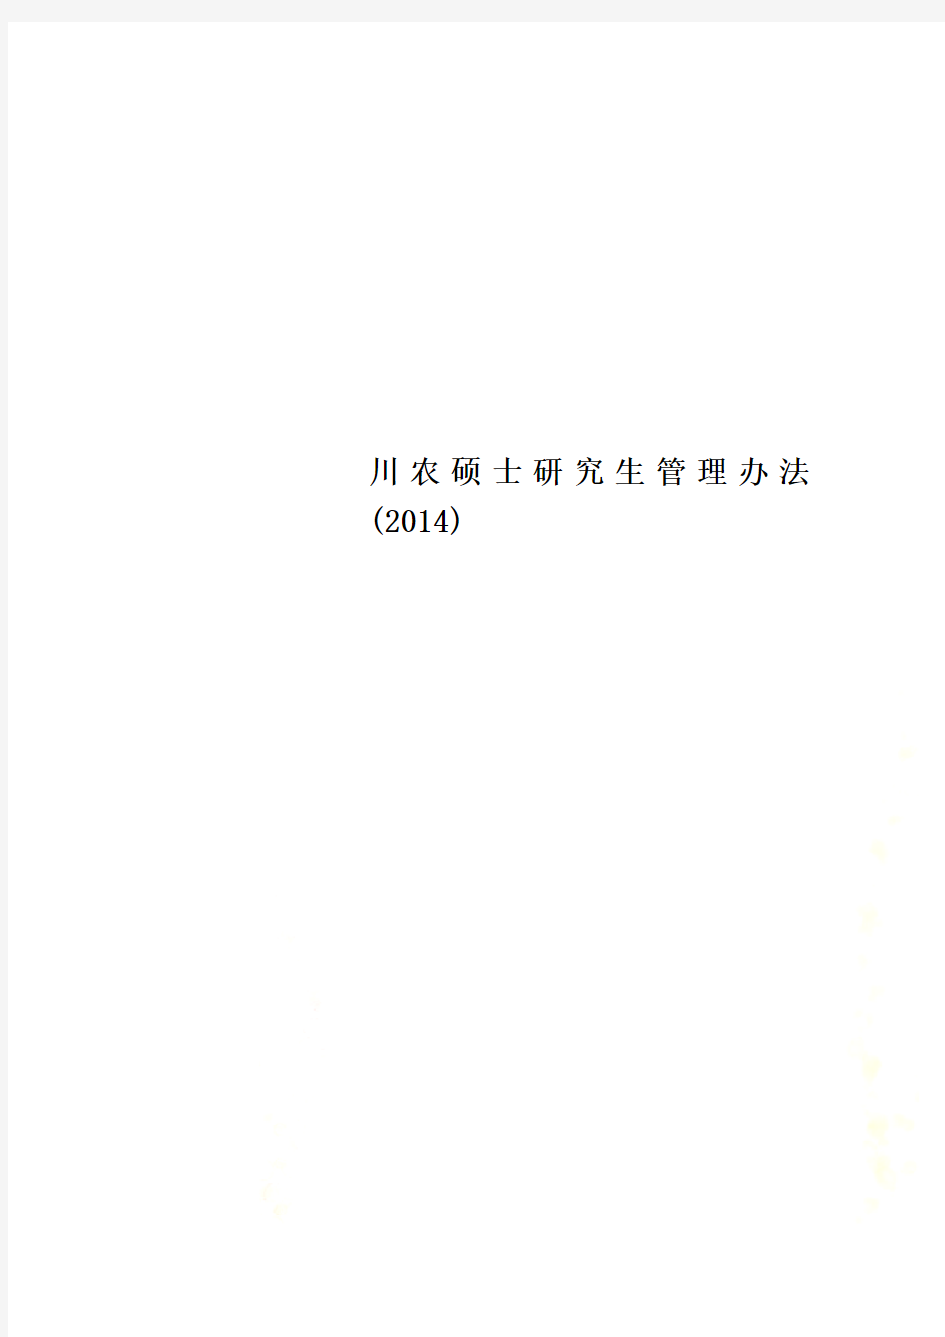 川农硕士研究生管理办法(2014)